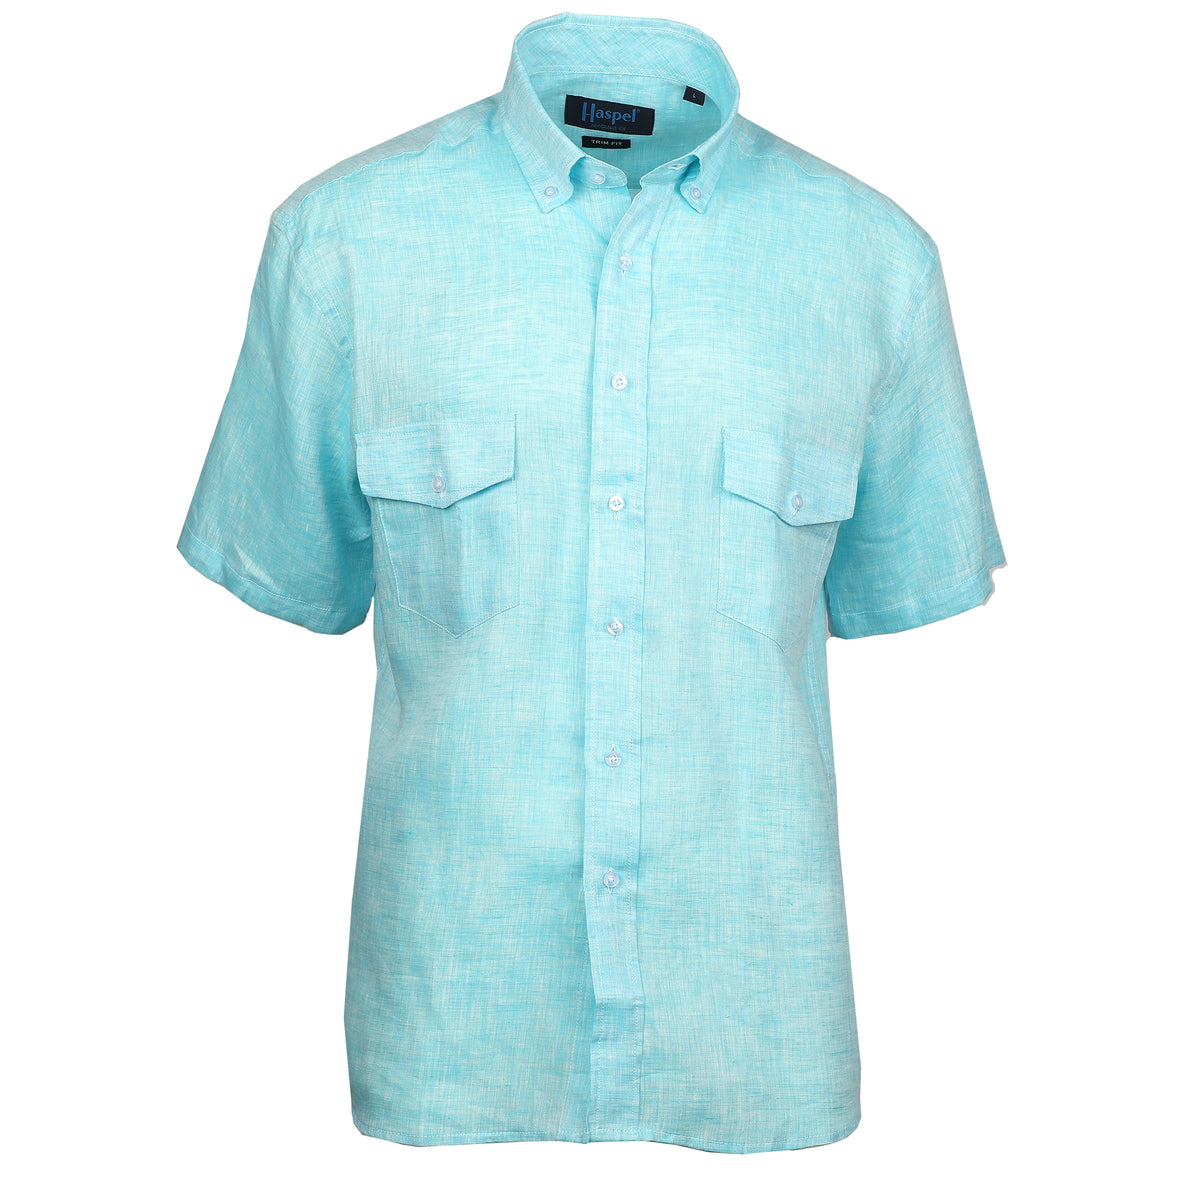 Sea Breeze Short Sleeve Teal Linen Shirt